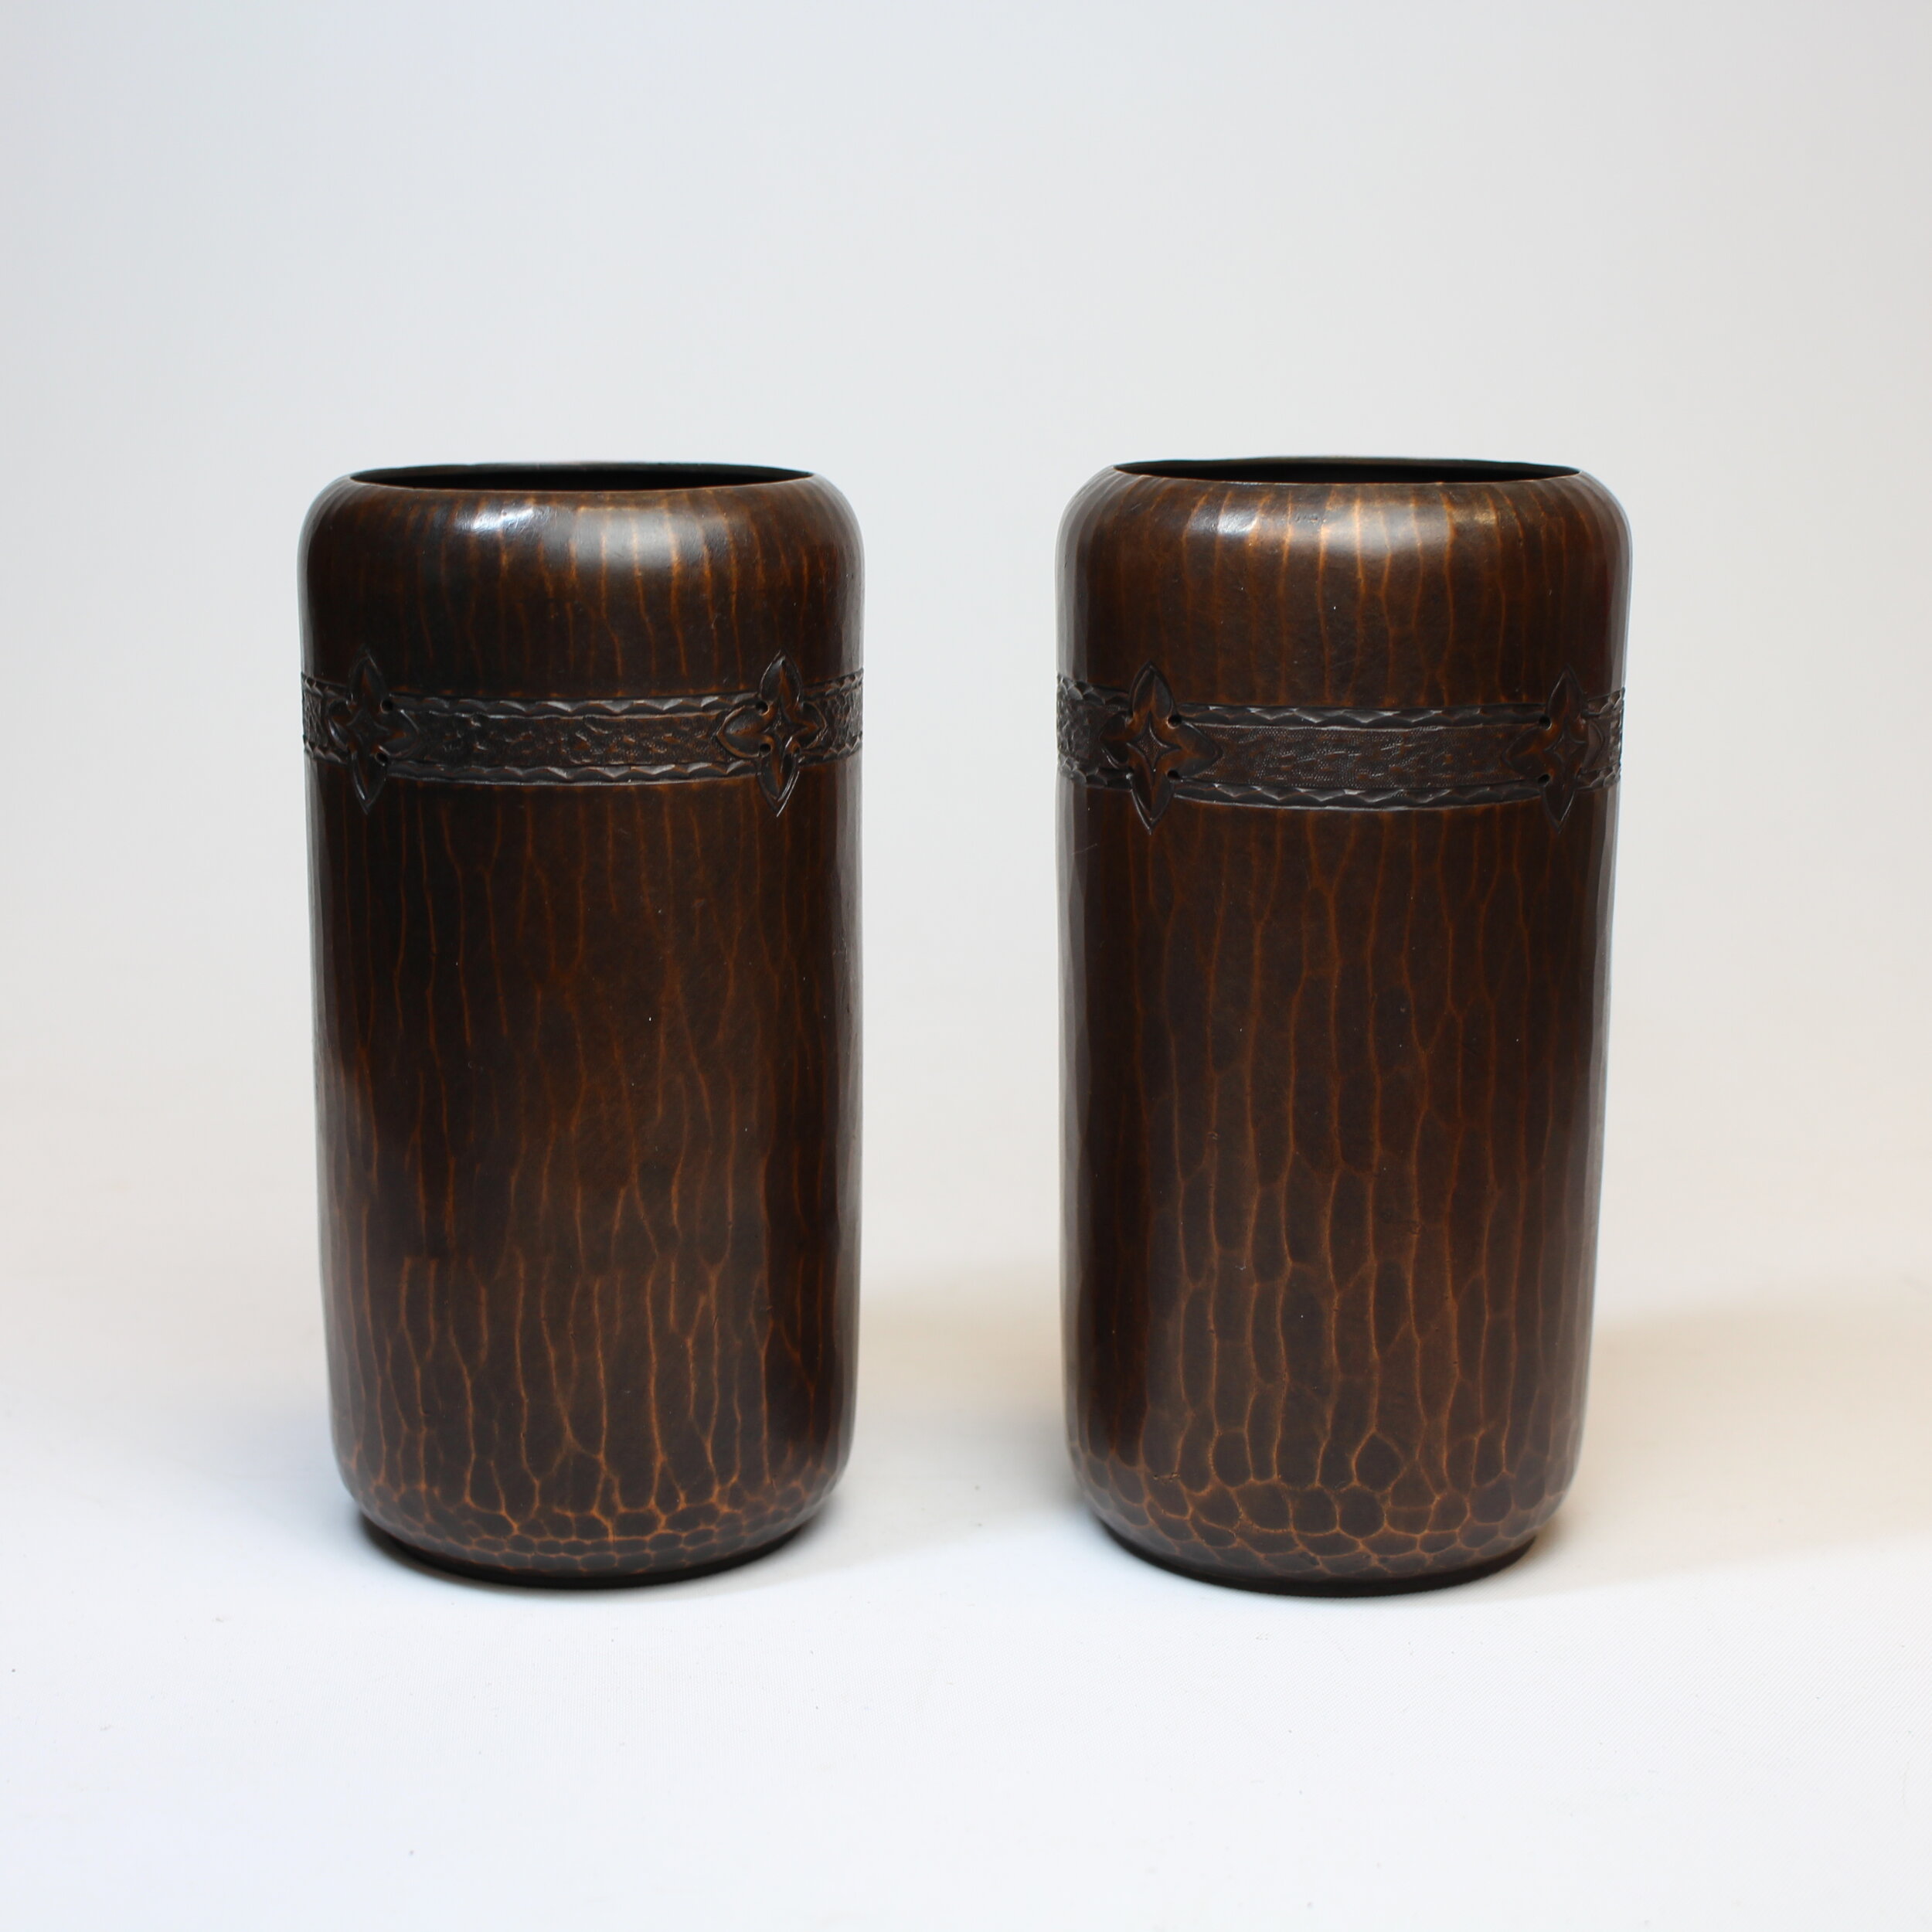 SOLD, Roycroft Tooled Cylinder Vases